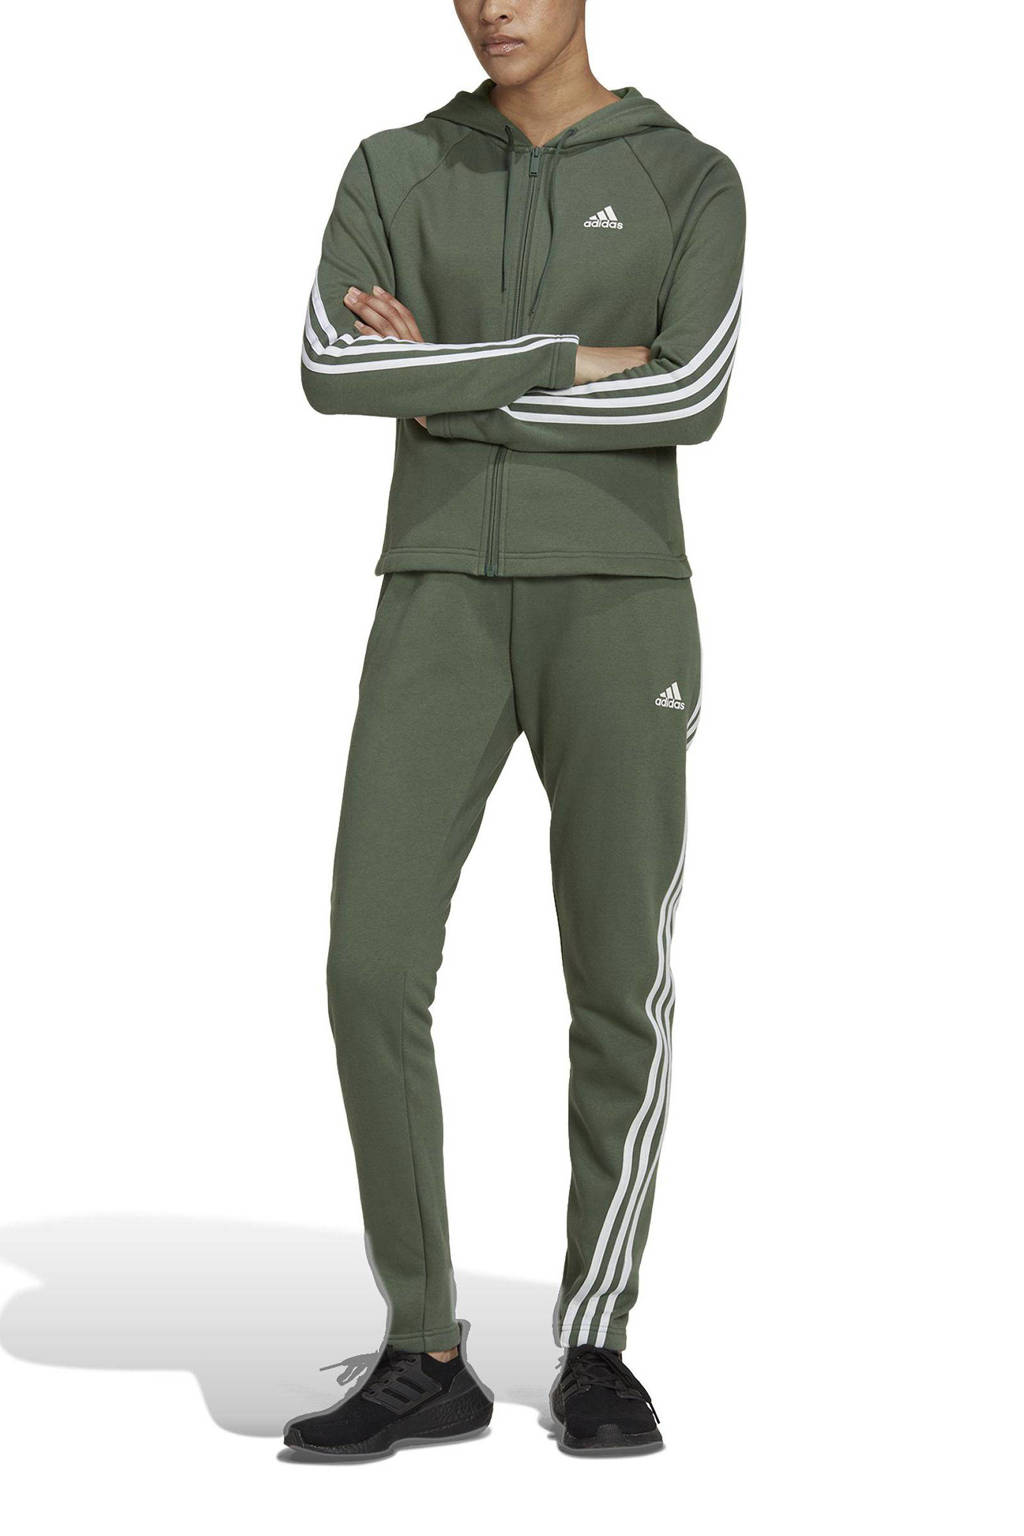 matig De kerk Aubergine adidas Performance fleece joggingpak groen/wit | wehkamp